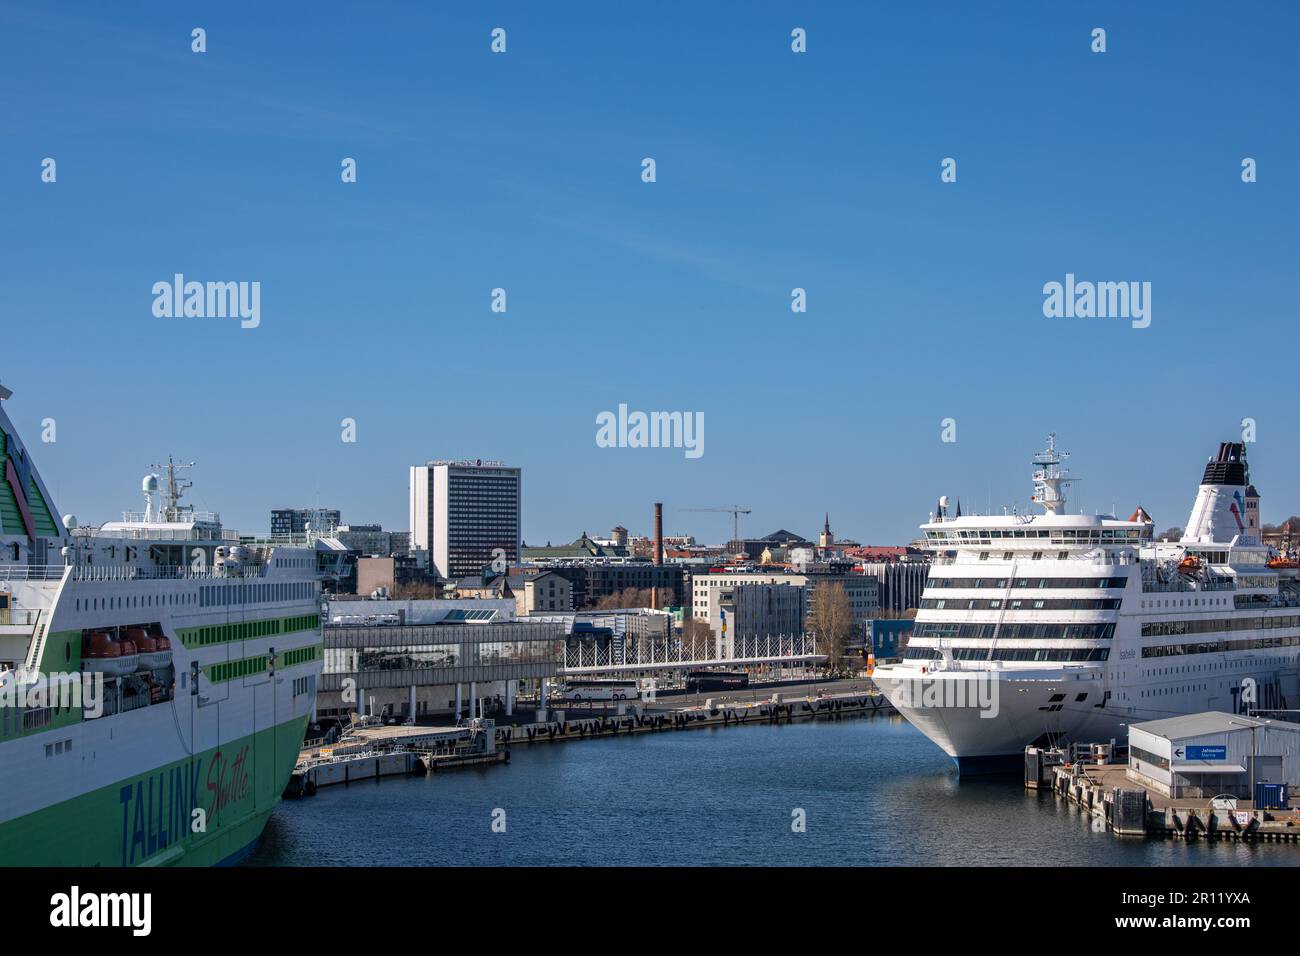 Festgetätete Tallink Kreuzfahrtschiffe im Passagierhafen oder reisisadam in Tallinn, Estland Stockfoto